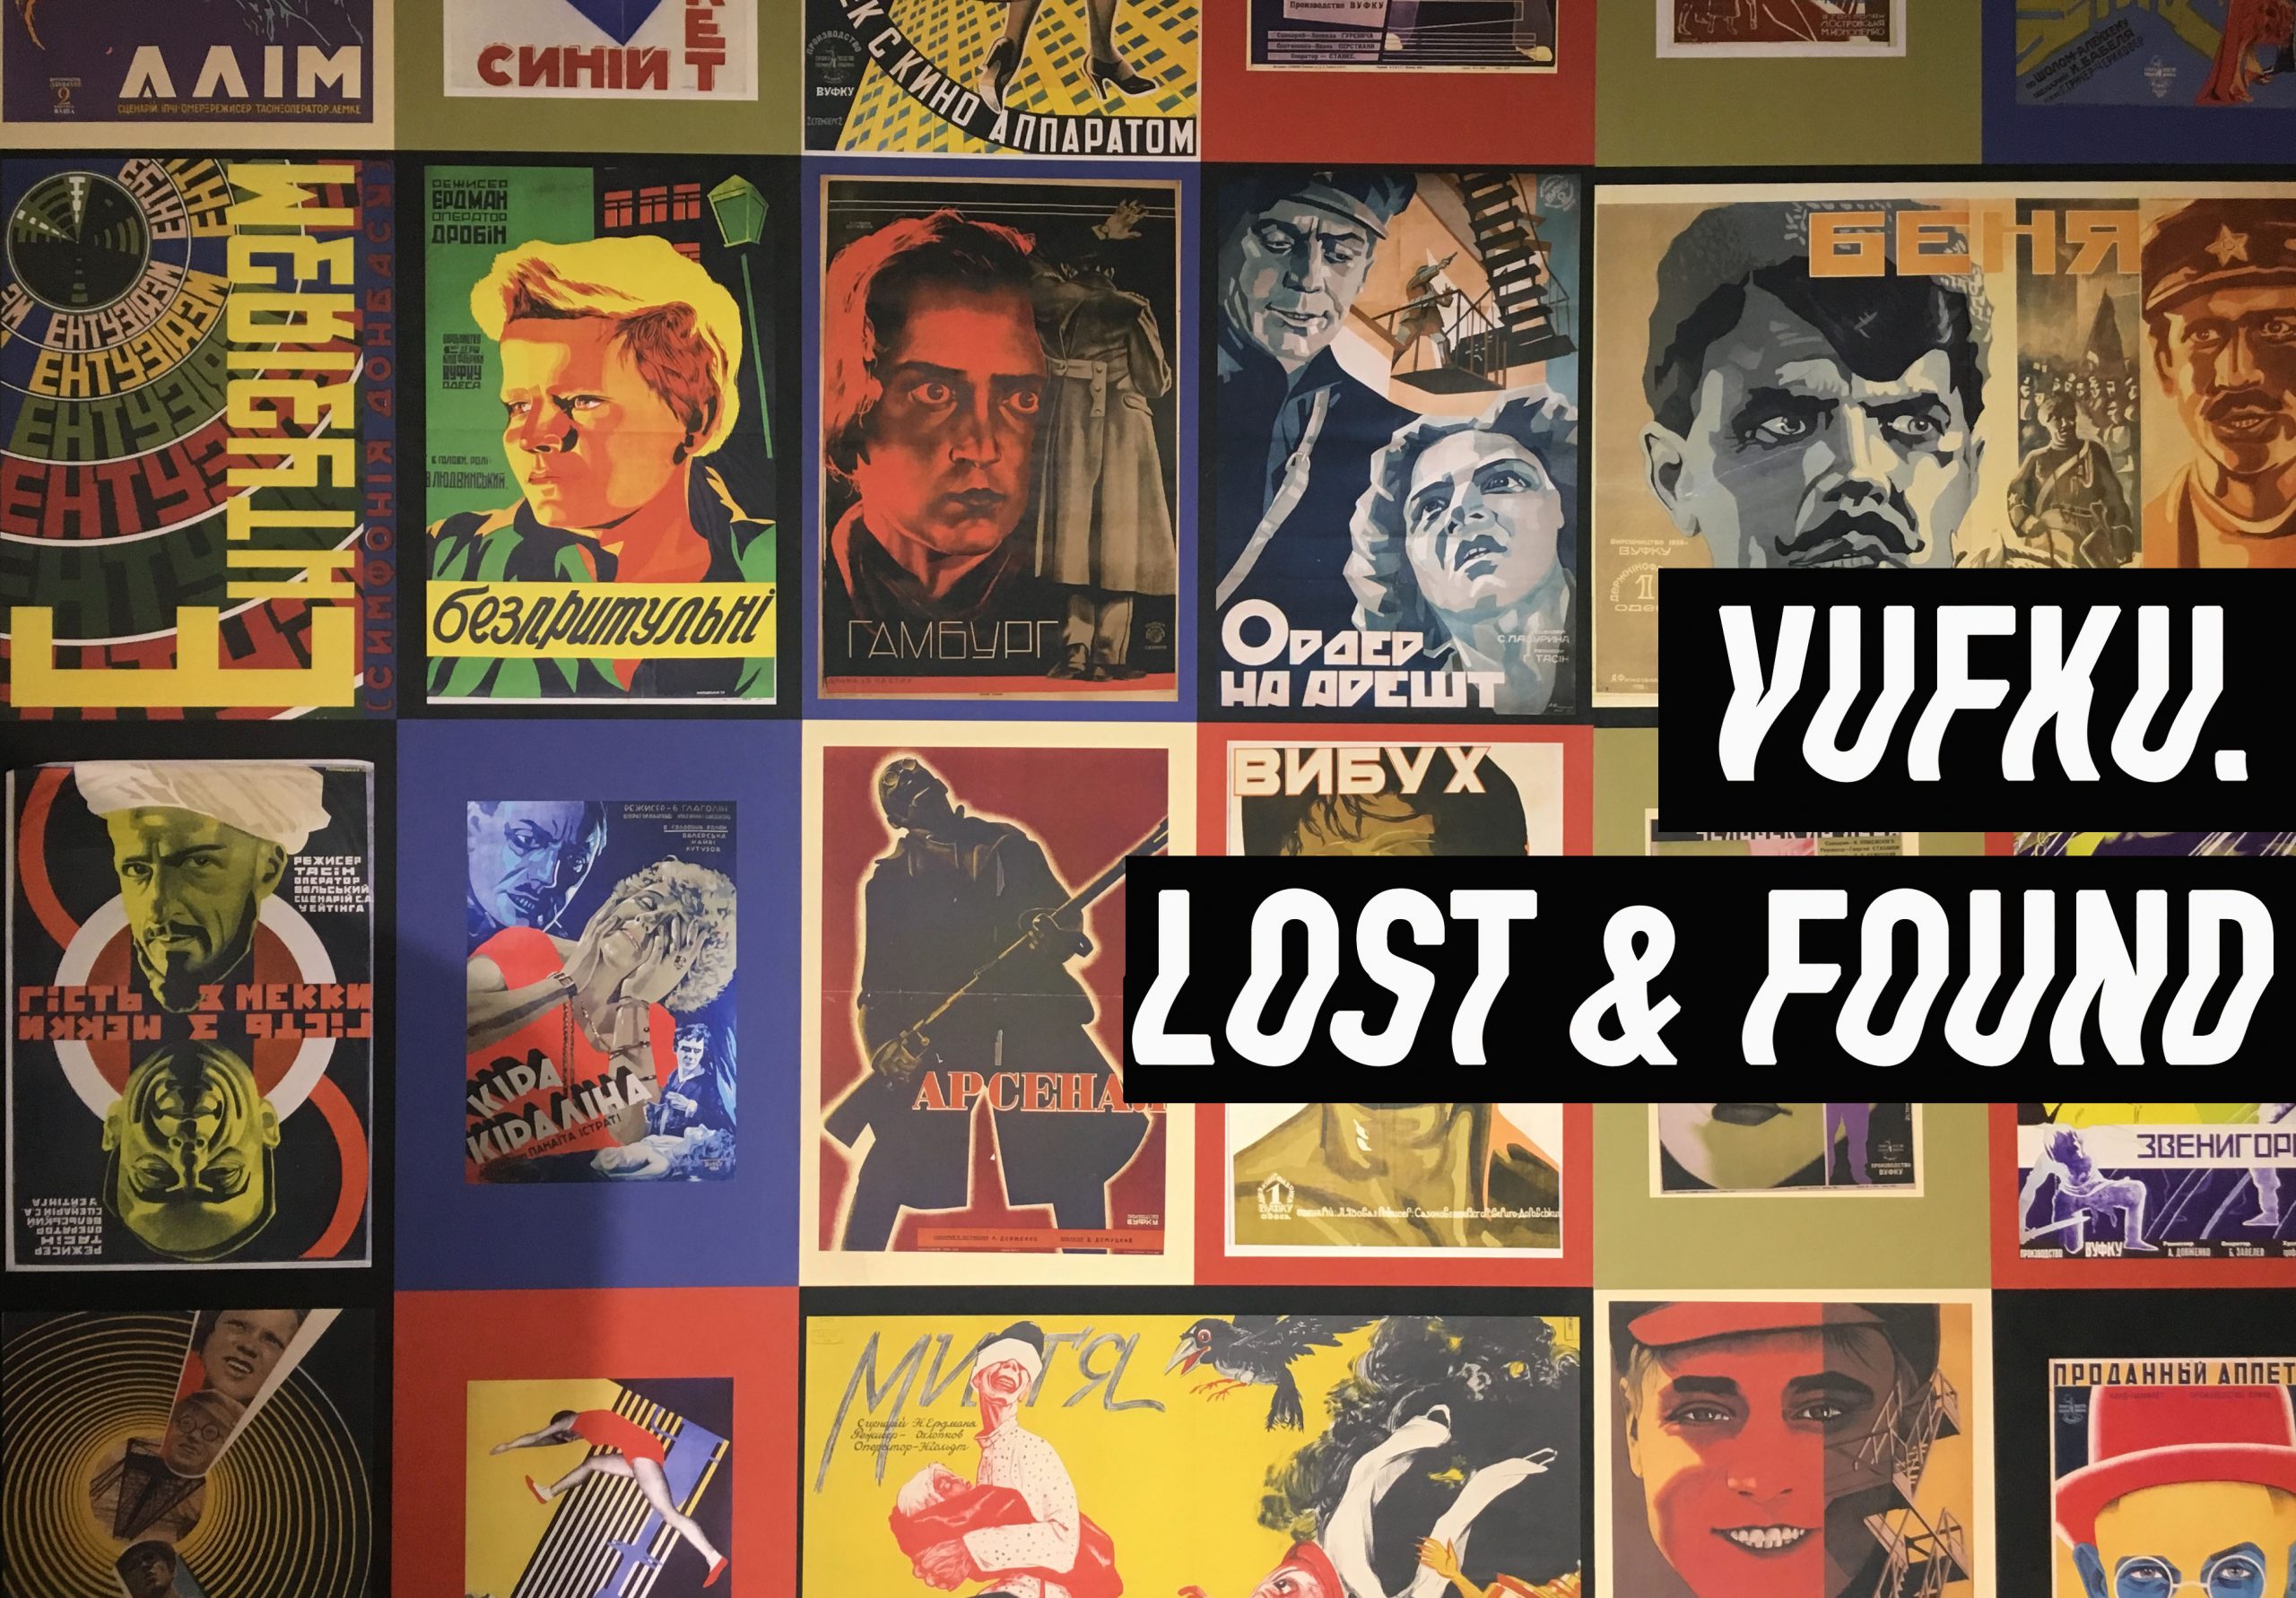 Vuvku. Lost & Found exhibition at Dovzhenko Center